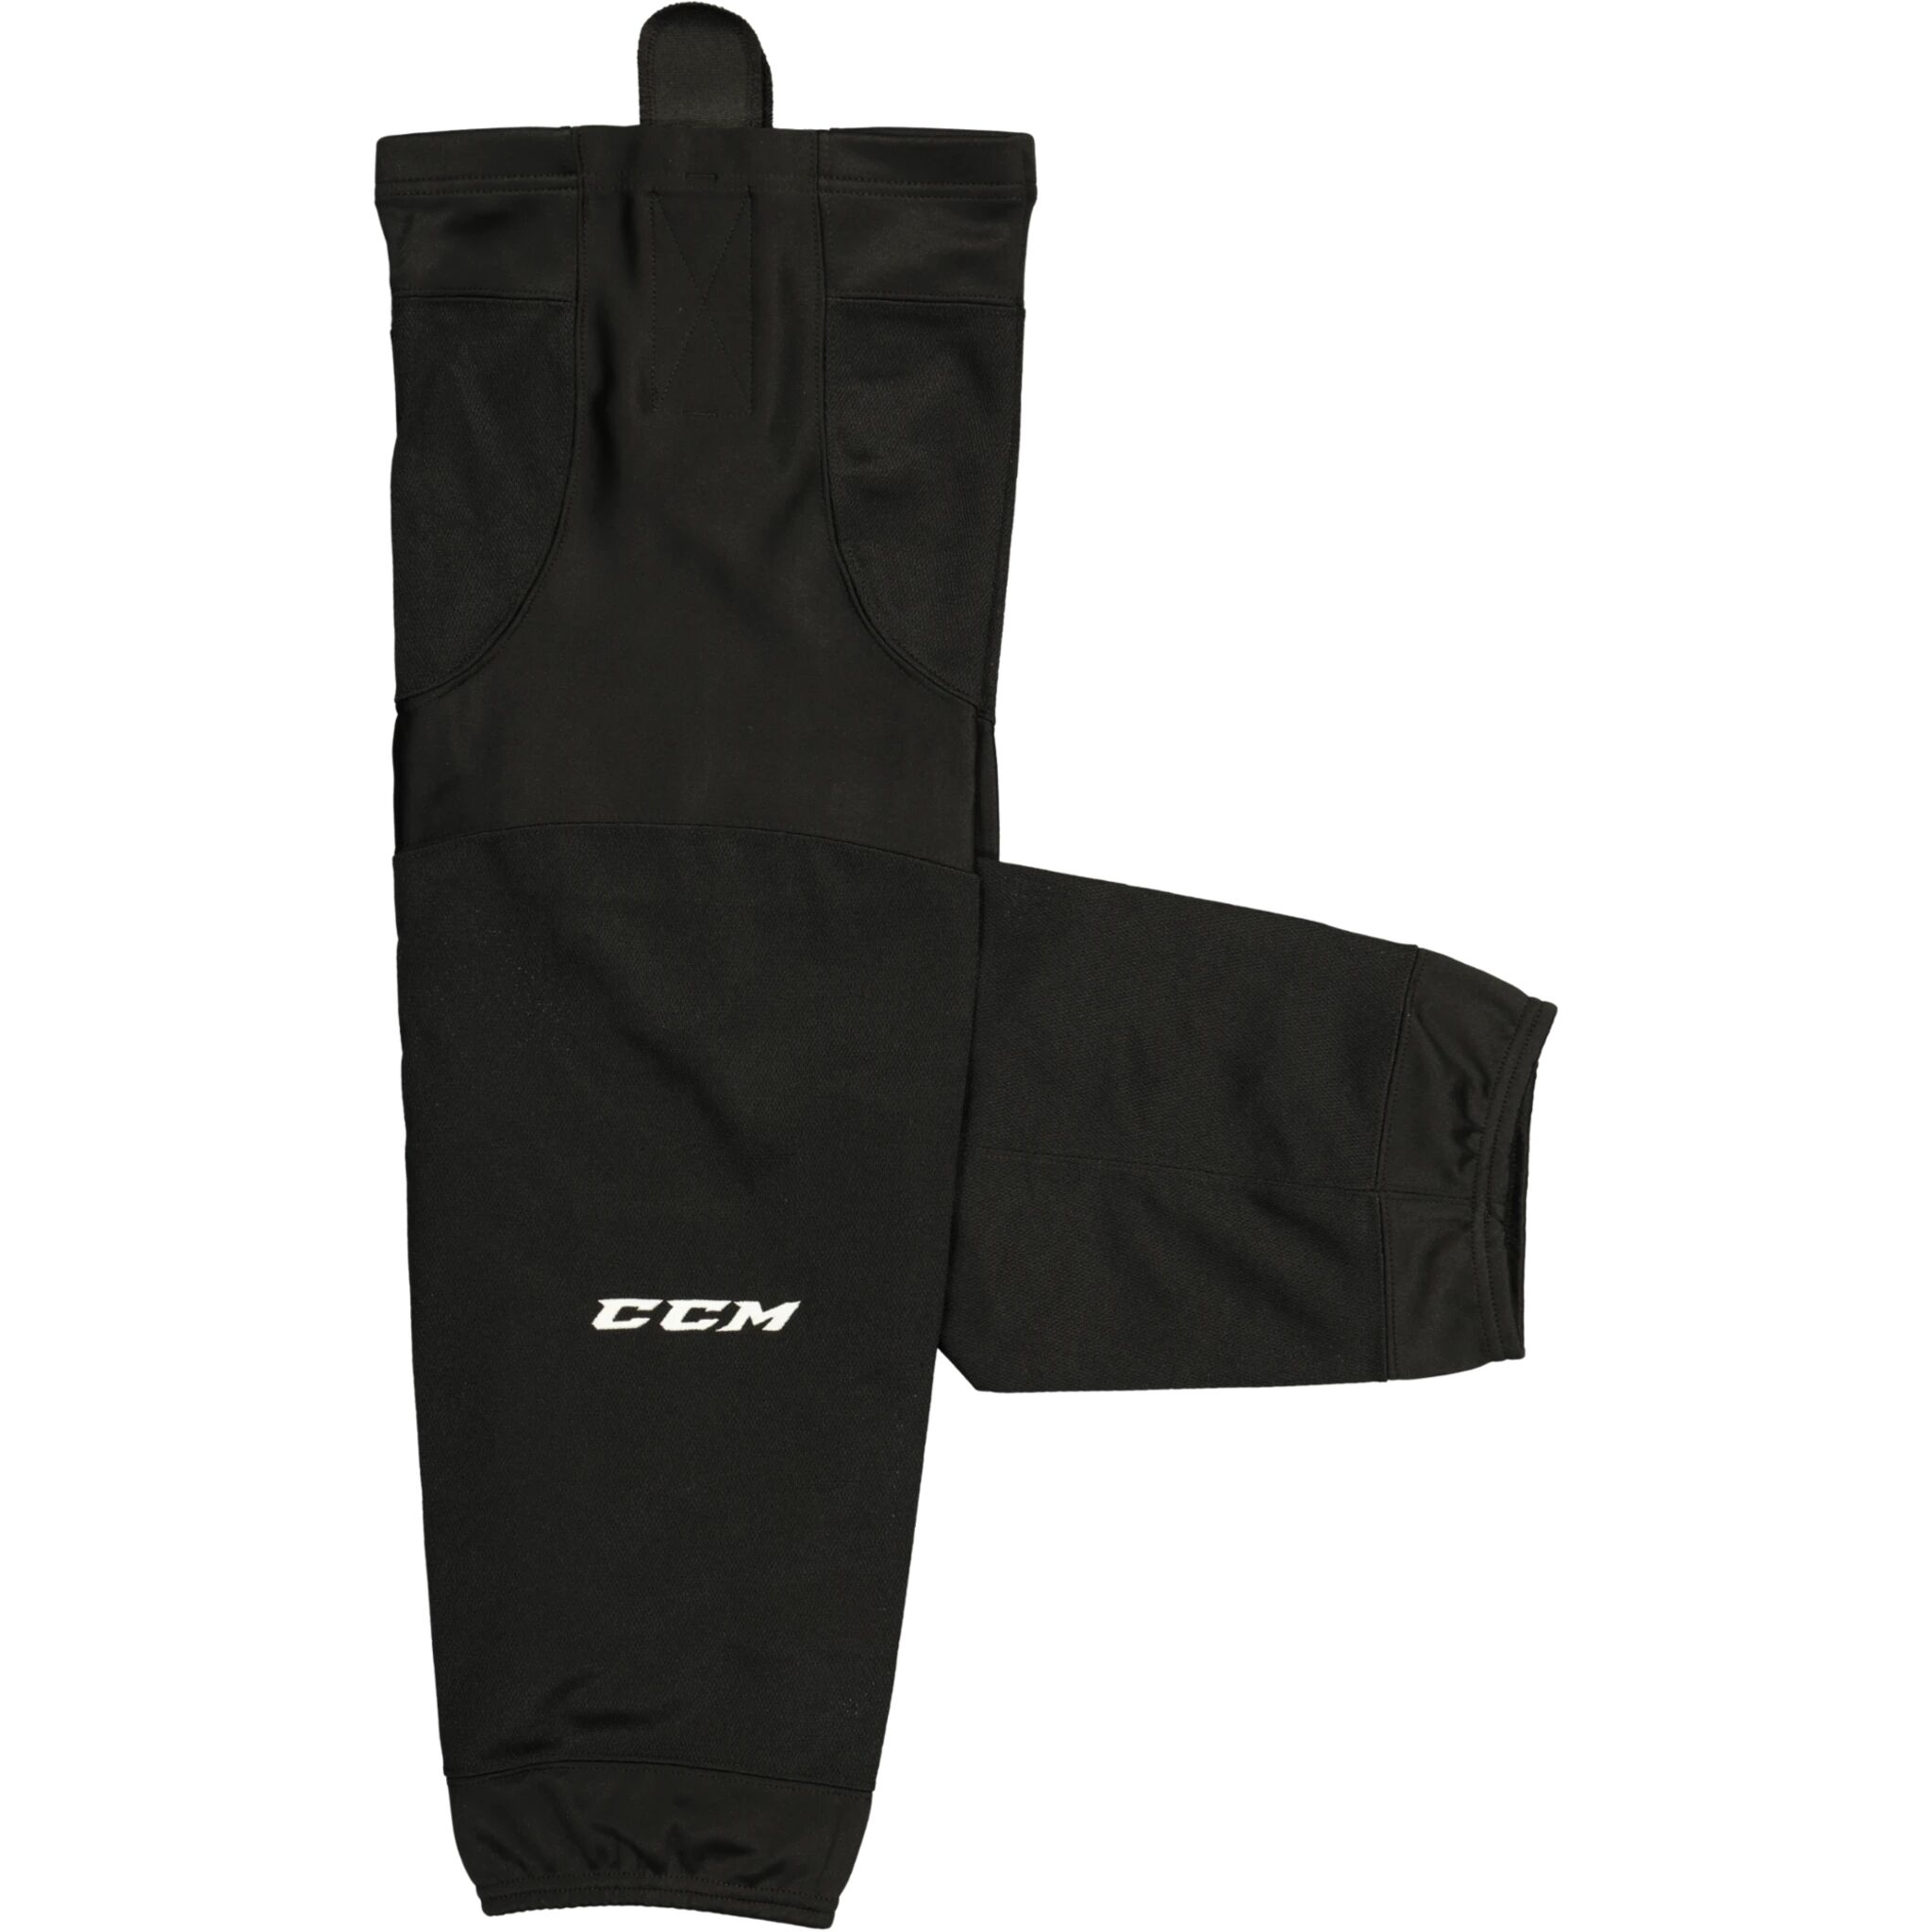 CCM 6000 Edge Sock, hockeygamasjer senior -0- Black (Noir)